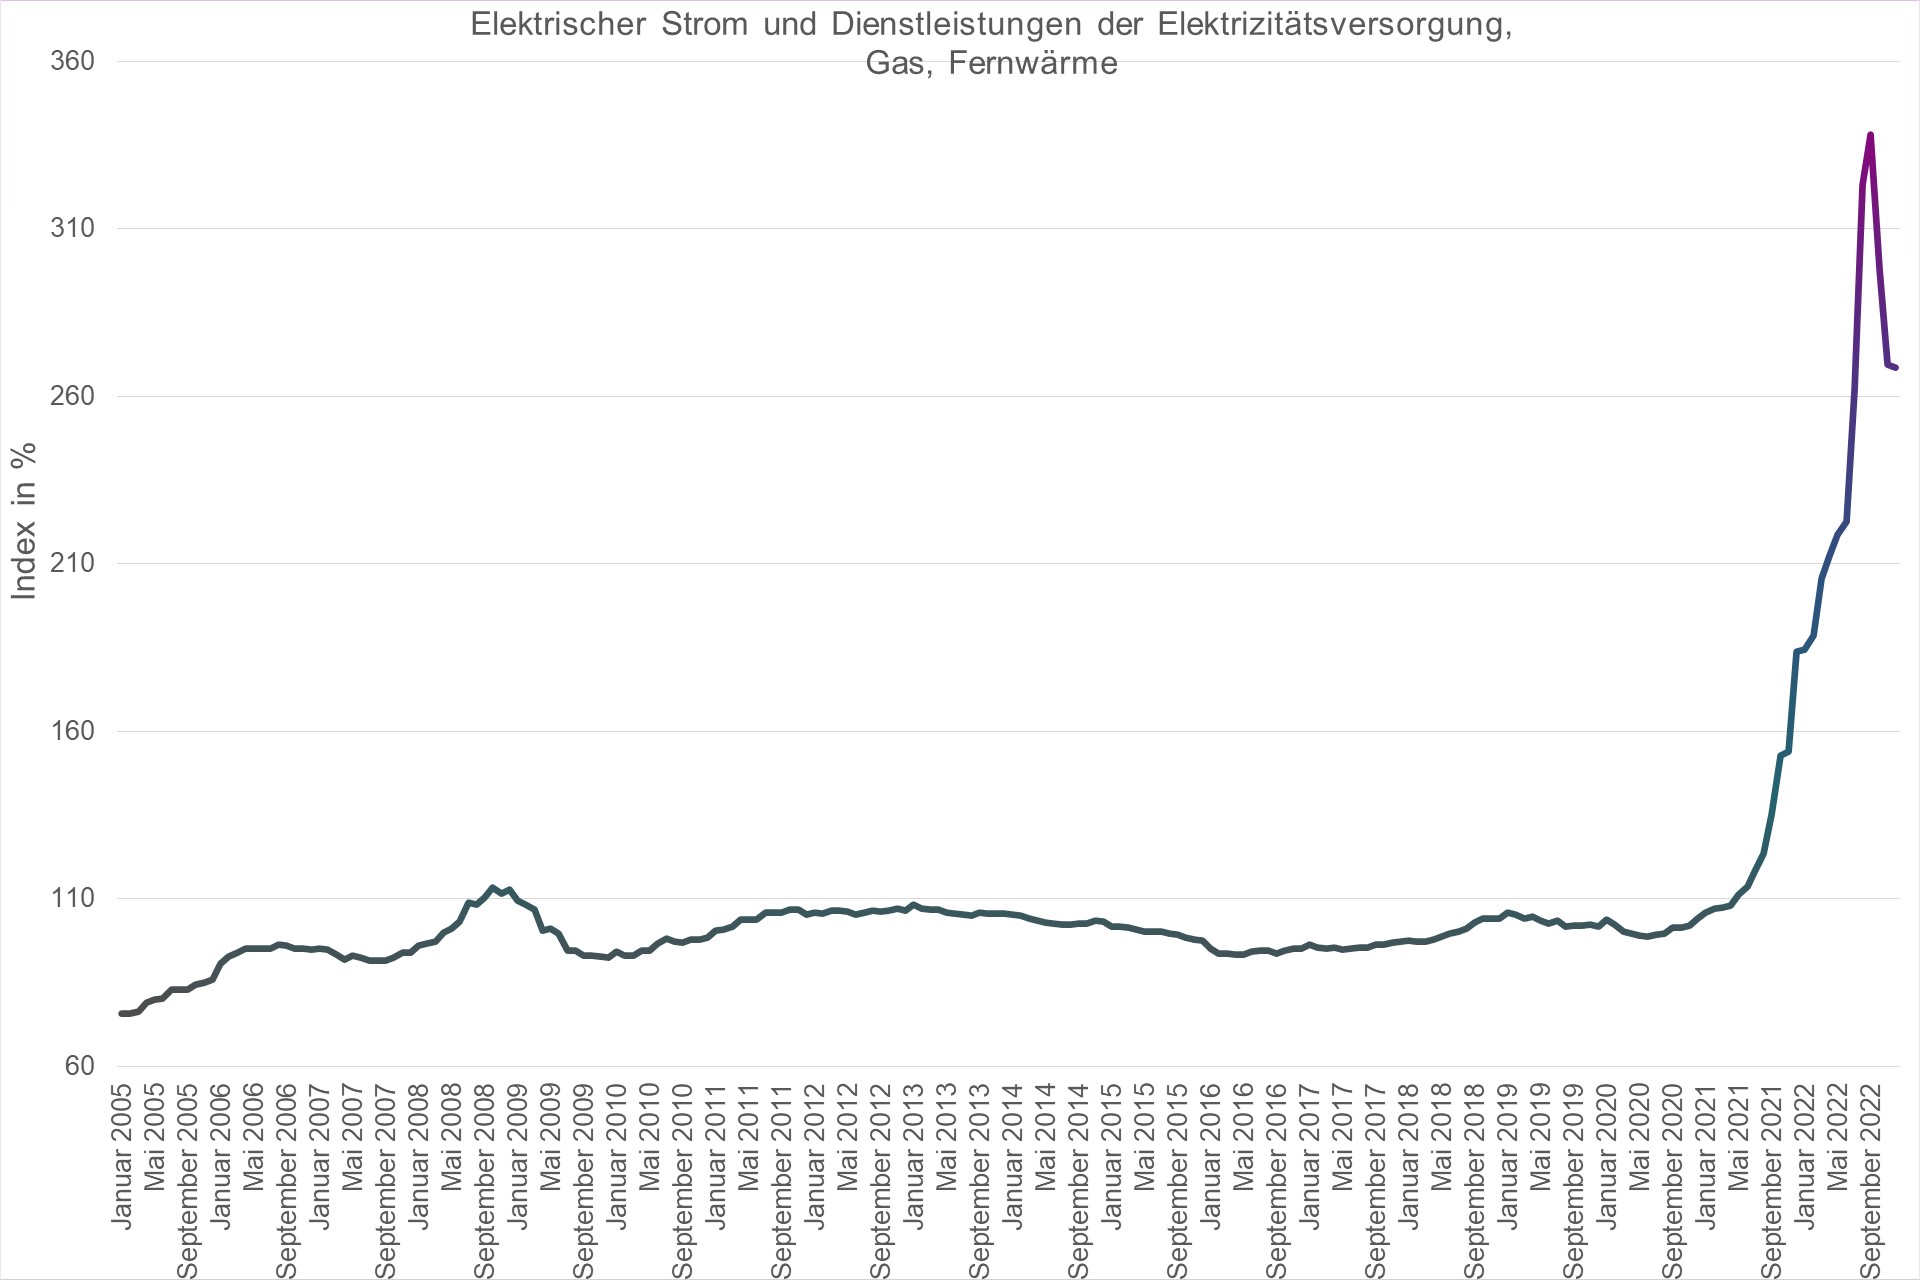 Grafik Preisindex Elektrischer Strom und Dienstleistungen der Elektrizitätsversorgung, Gas, Fernwärme